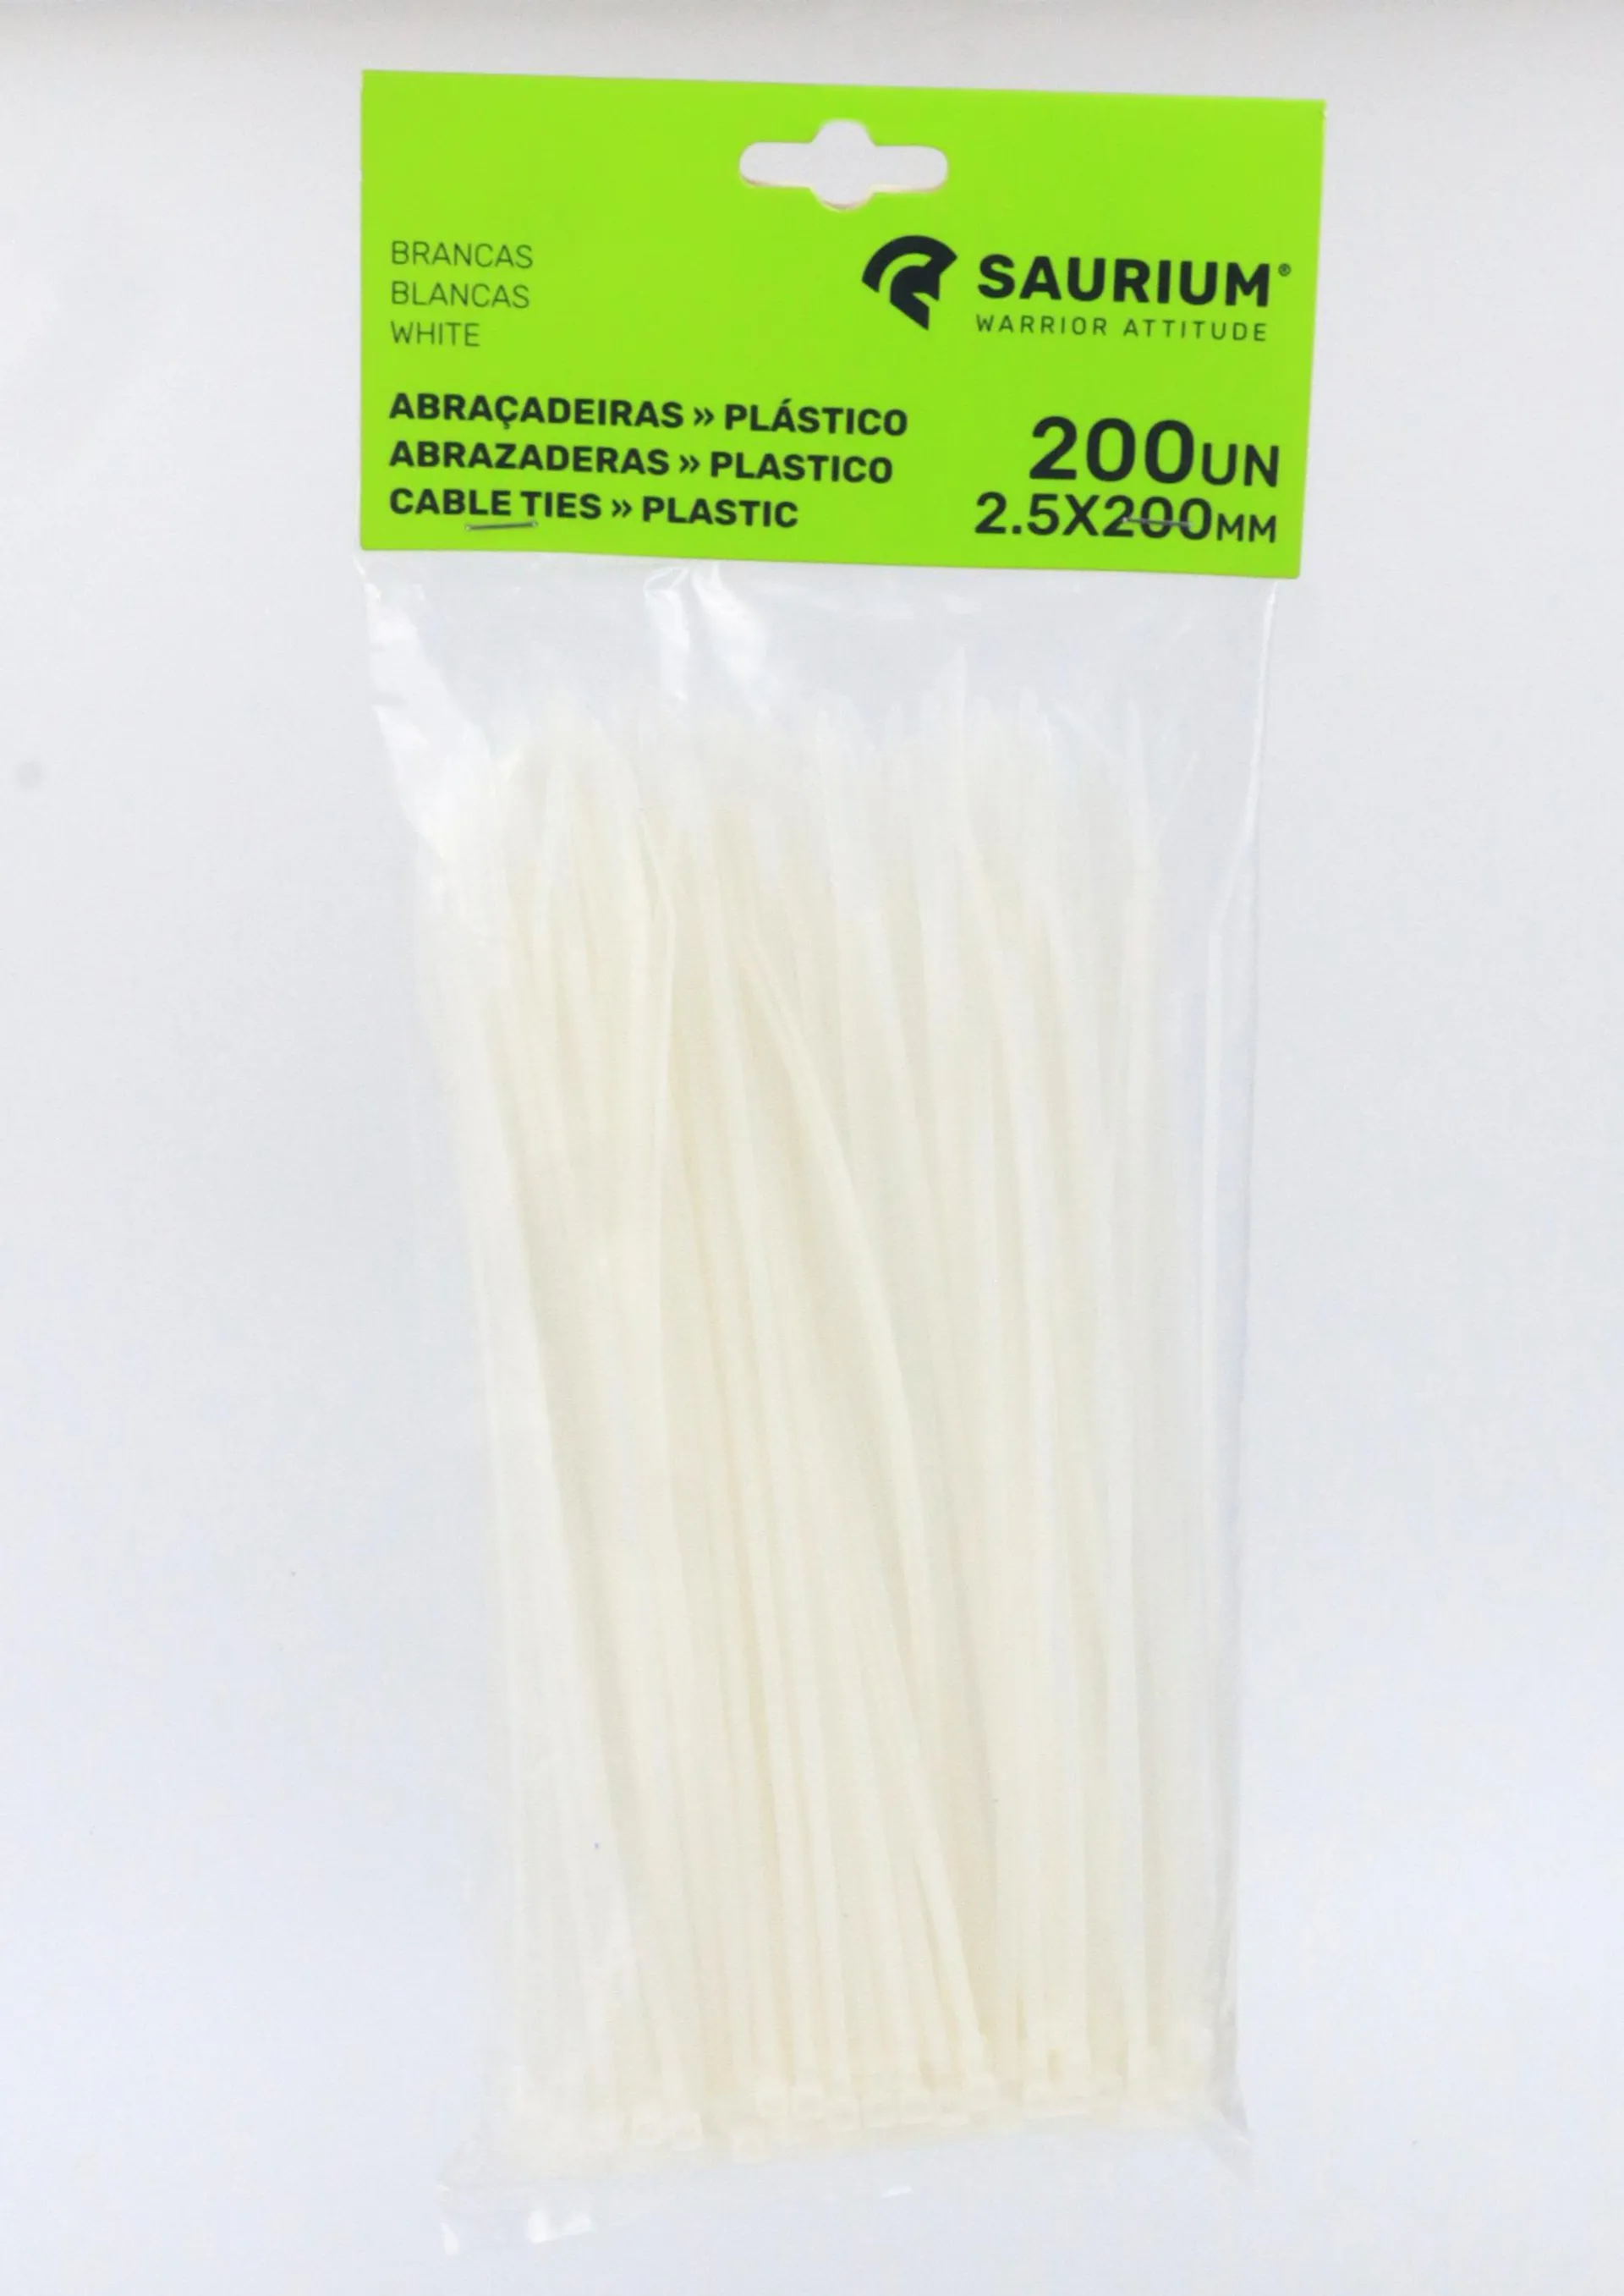 Abraçadeira Plástico, Branca, 2,5 x 200mm - SAURIUM®